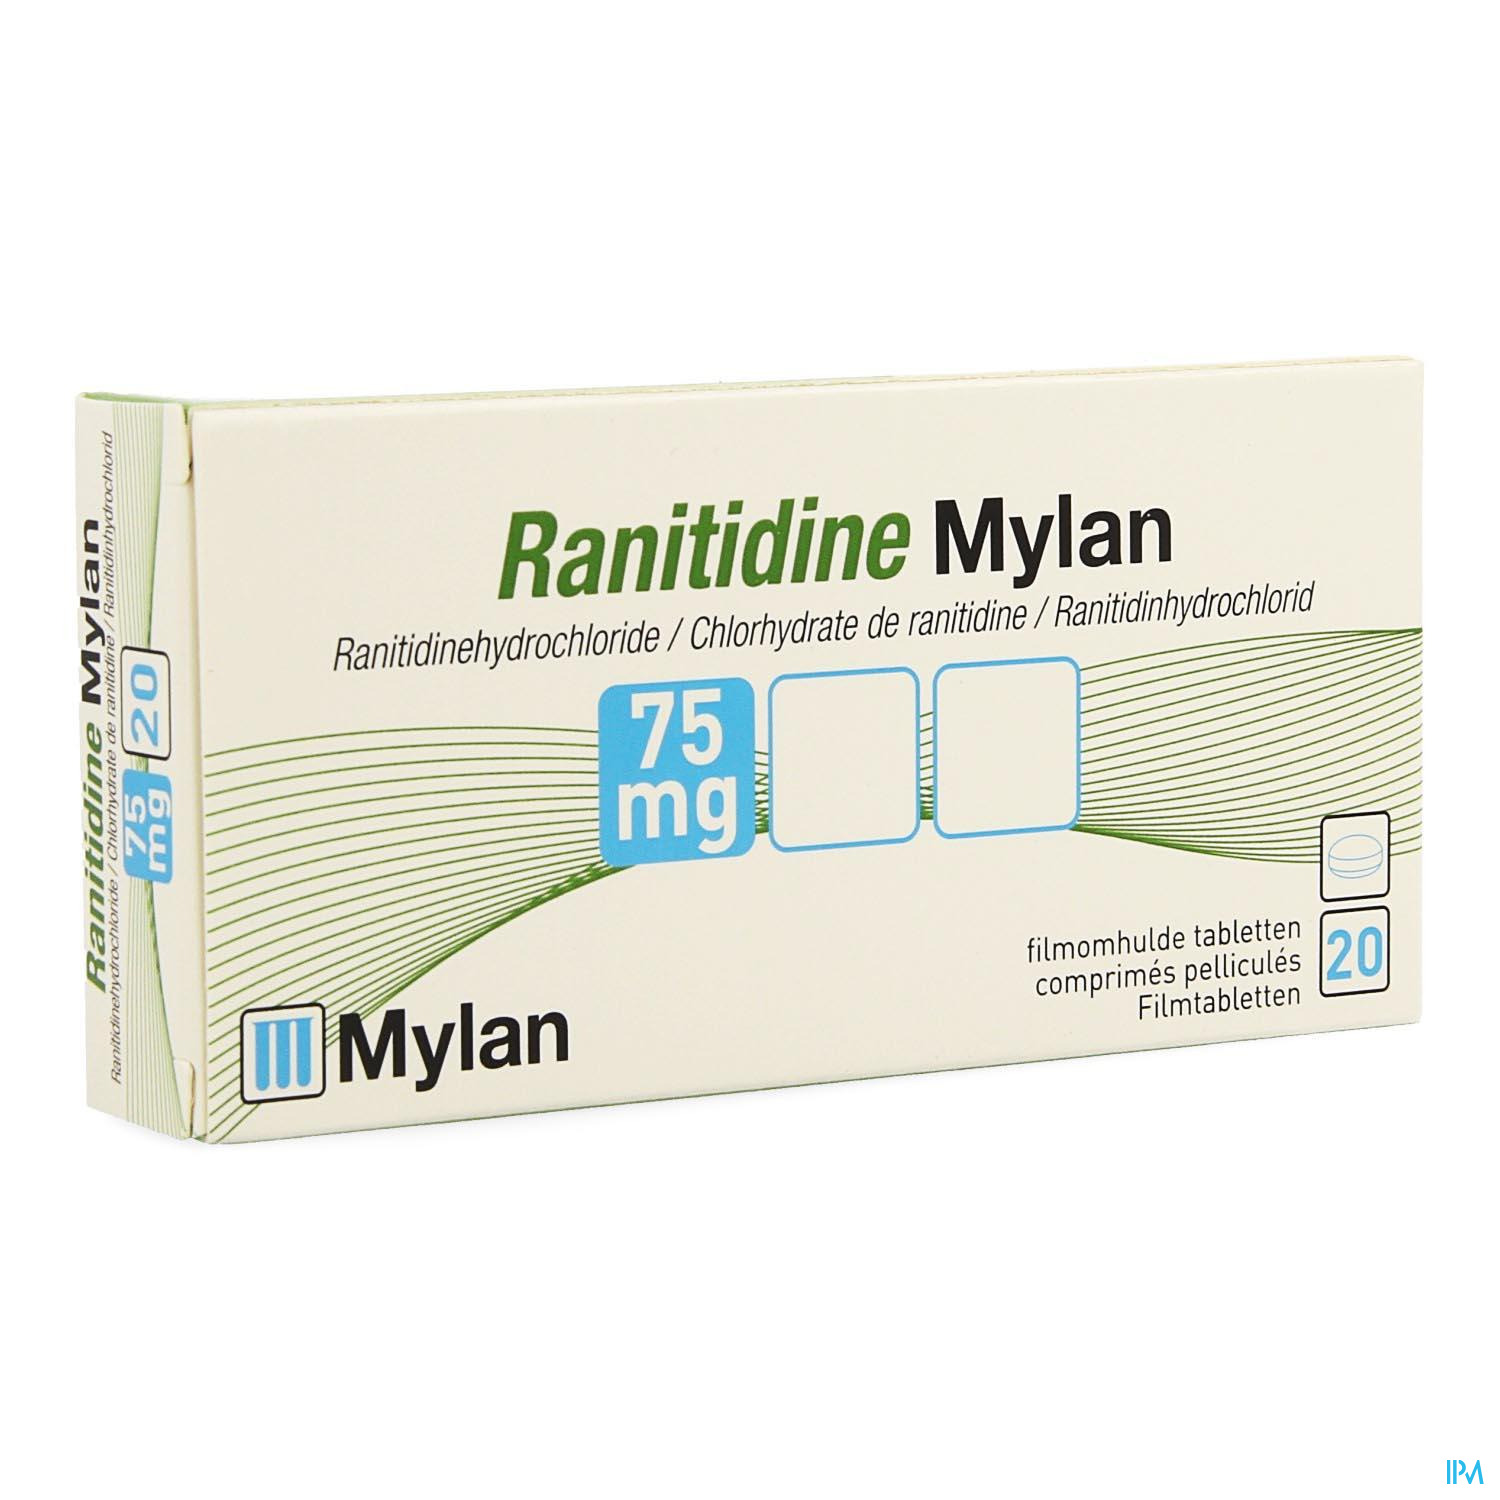 Ranitidine Mylan Tabl 20 X 75mg